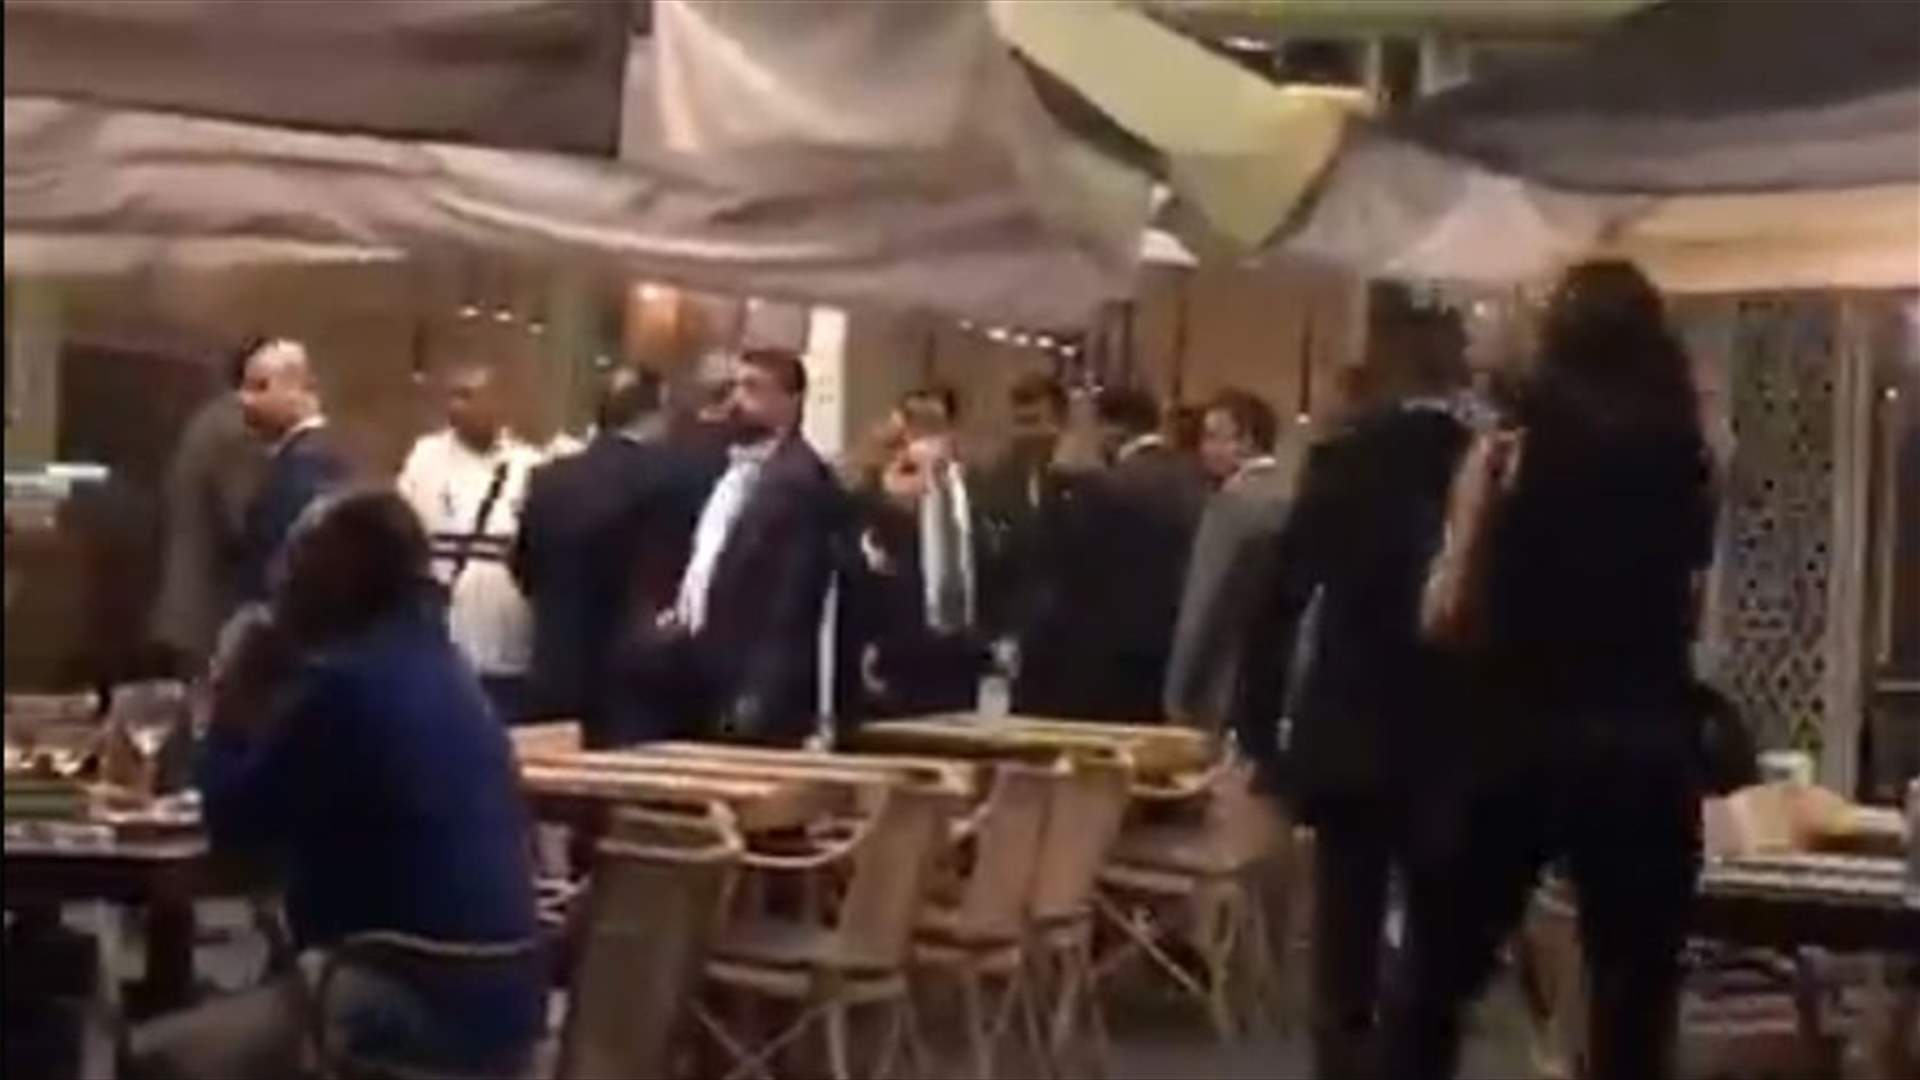 محتجون توجهوا الى احد المطاعم في الزيتونة باي حيث يتواجد وزير الطاقة والوفد العراقي (فيديو)